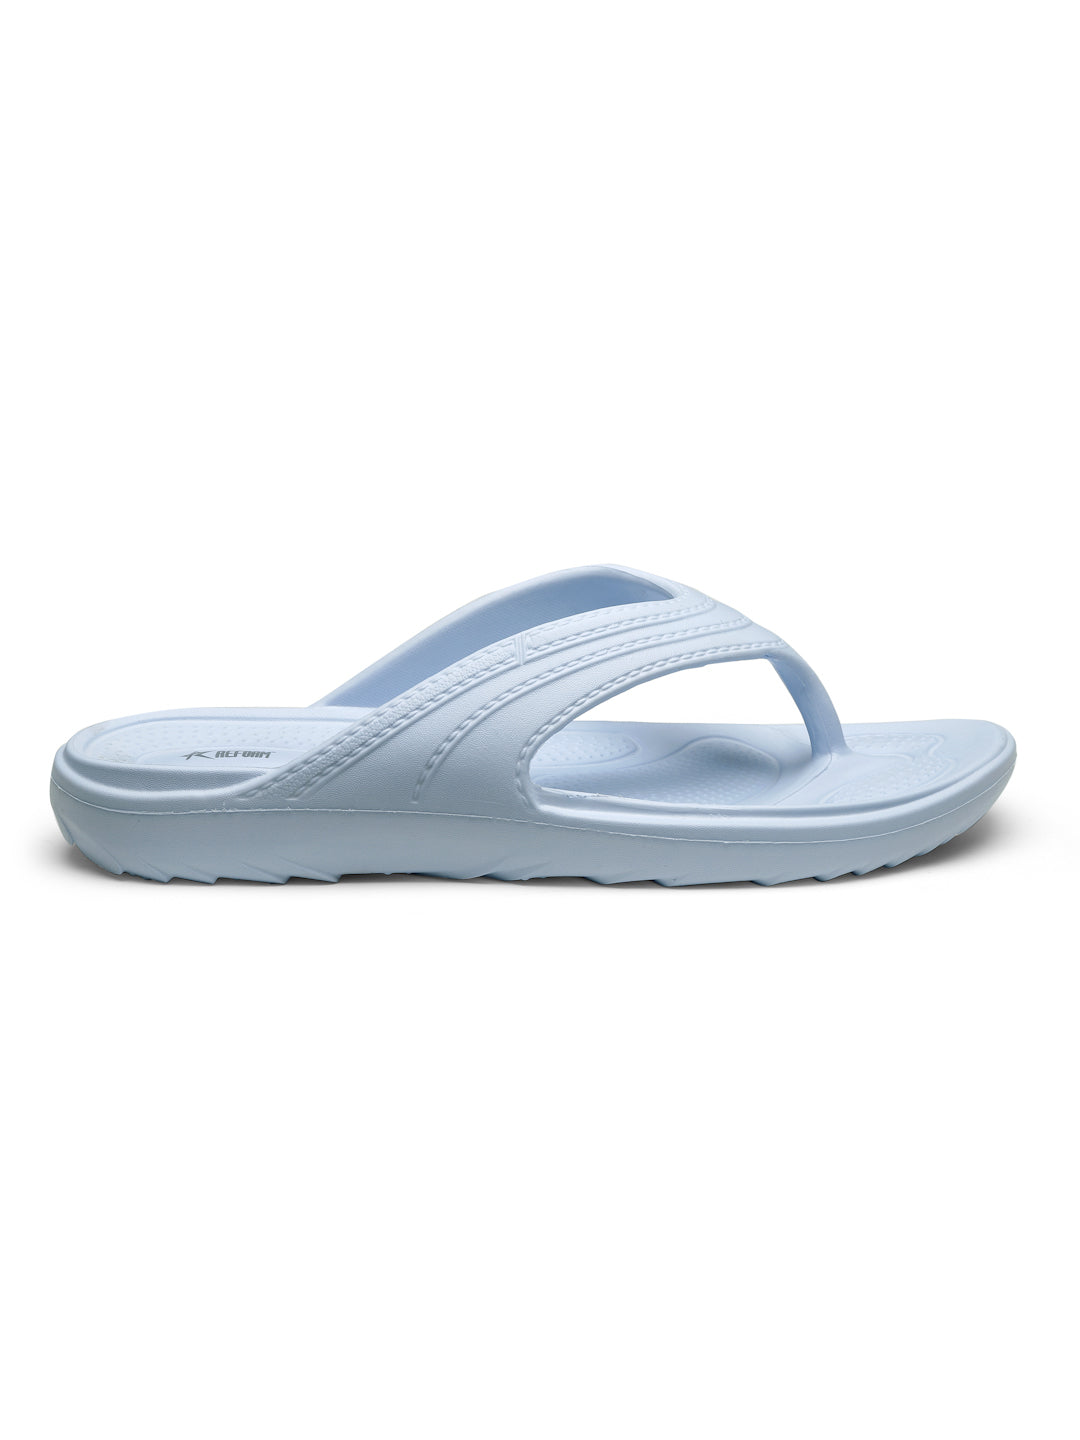 Powder Blue Solid EVA Slip on Slippers For Women's